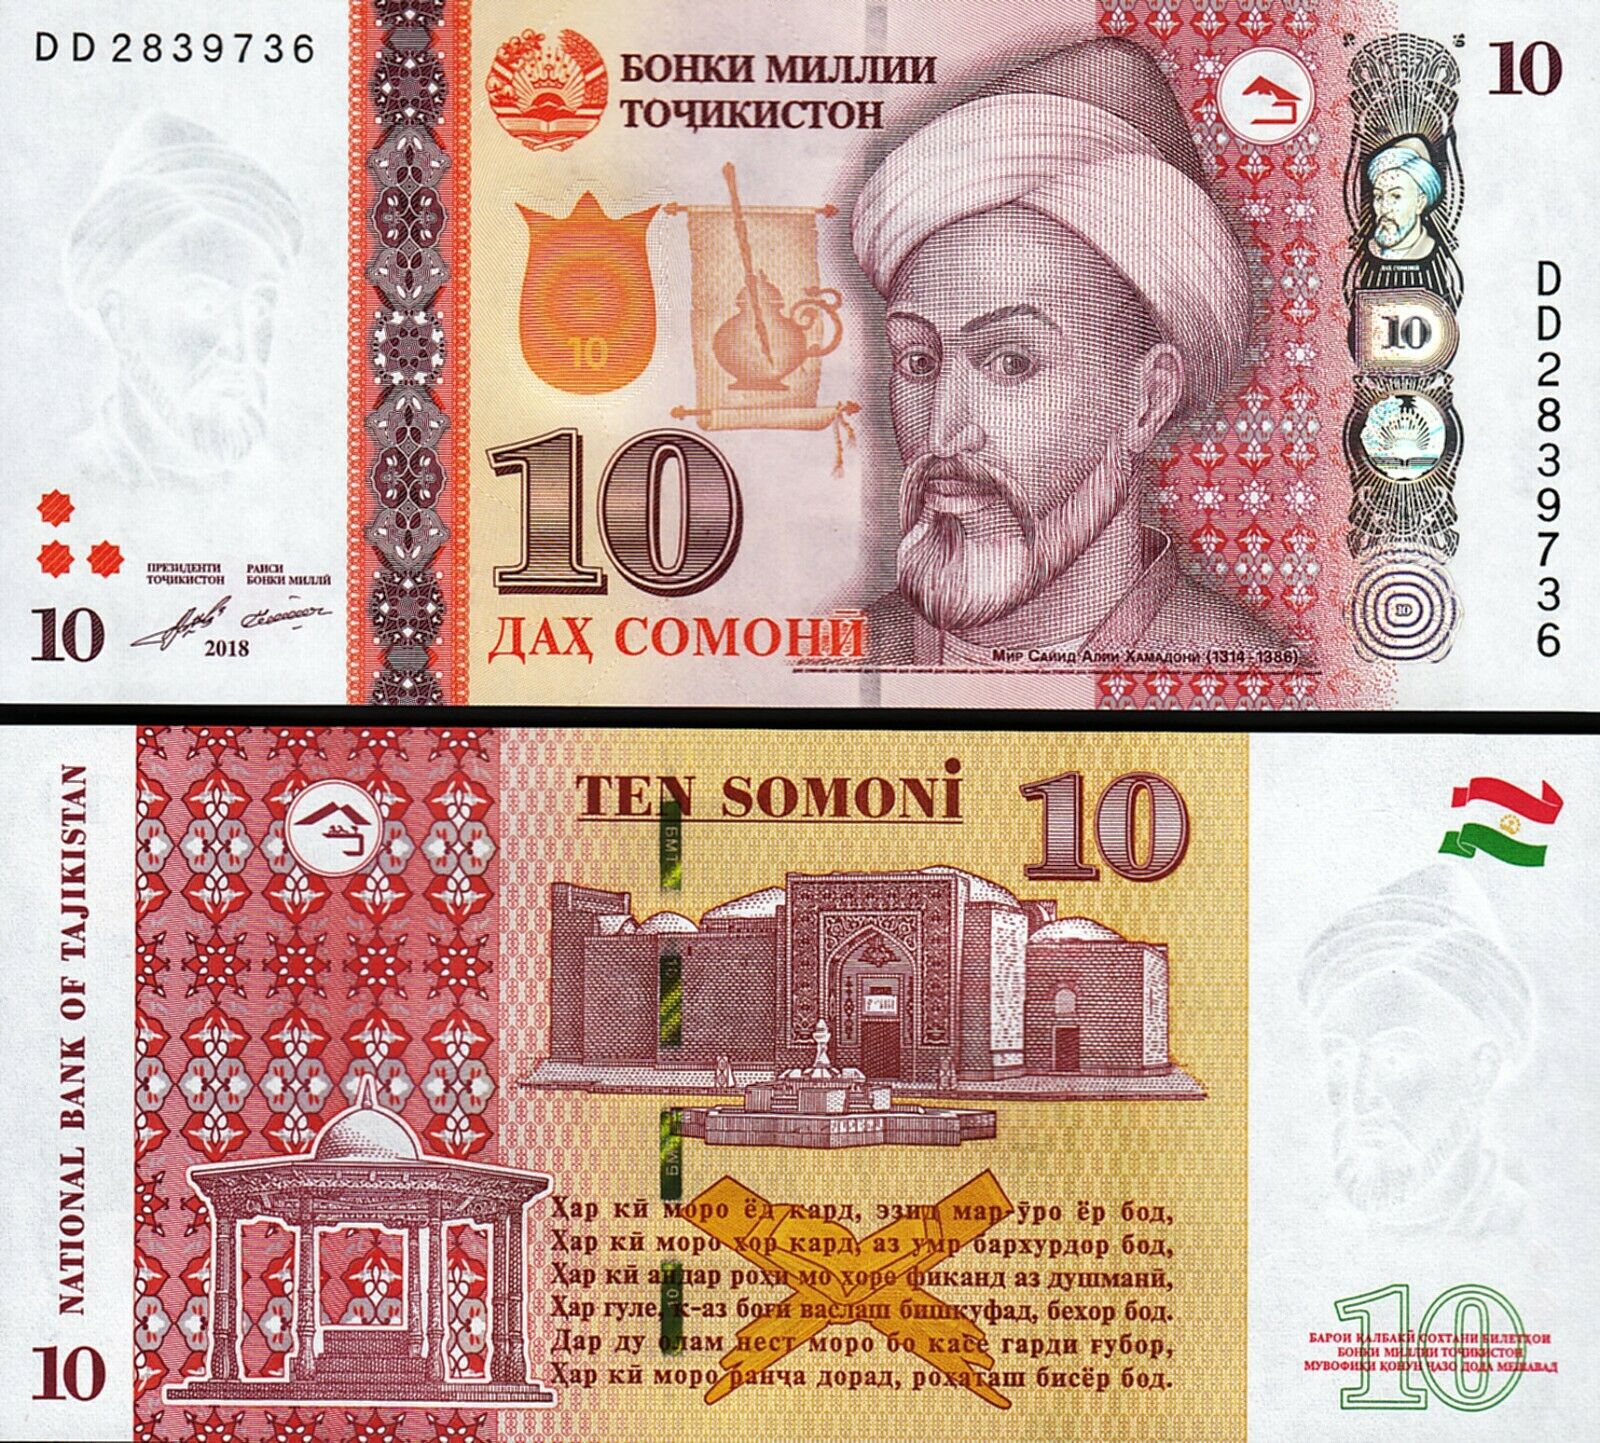 5000 рублей в сомони на сегодня. Купюры Таджикистана. Таджикские банкноты. Таджикский Сомони. Купюры Таджикистана 1000 Сомони.